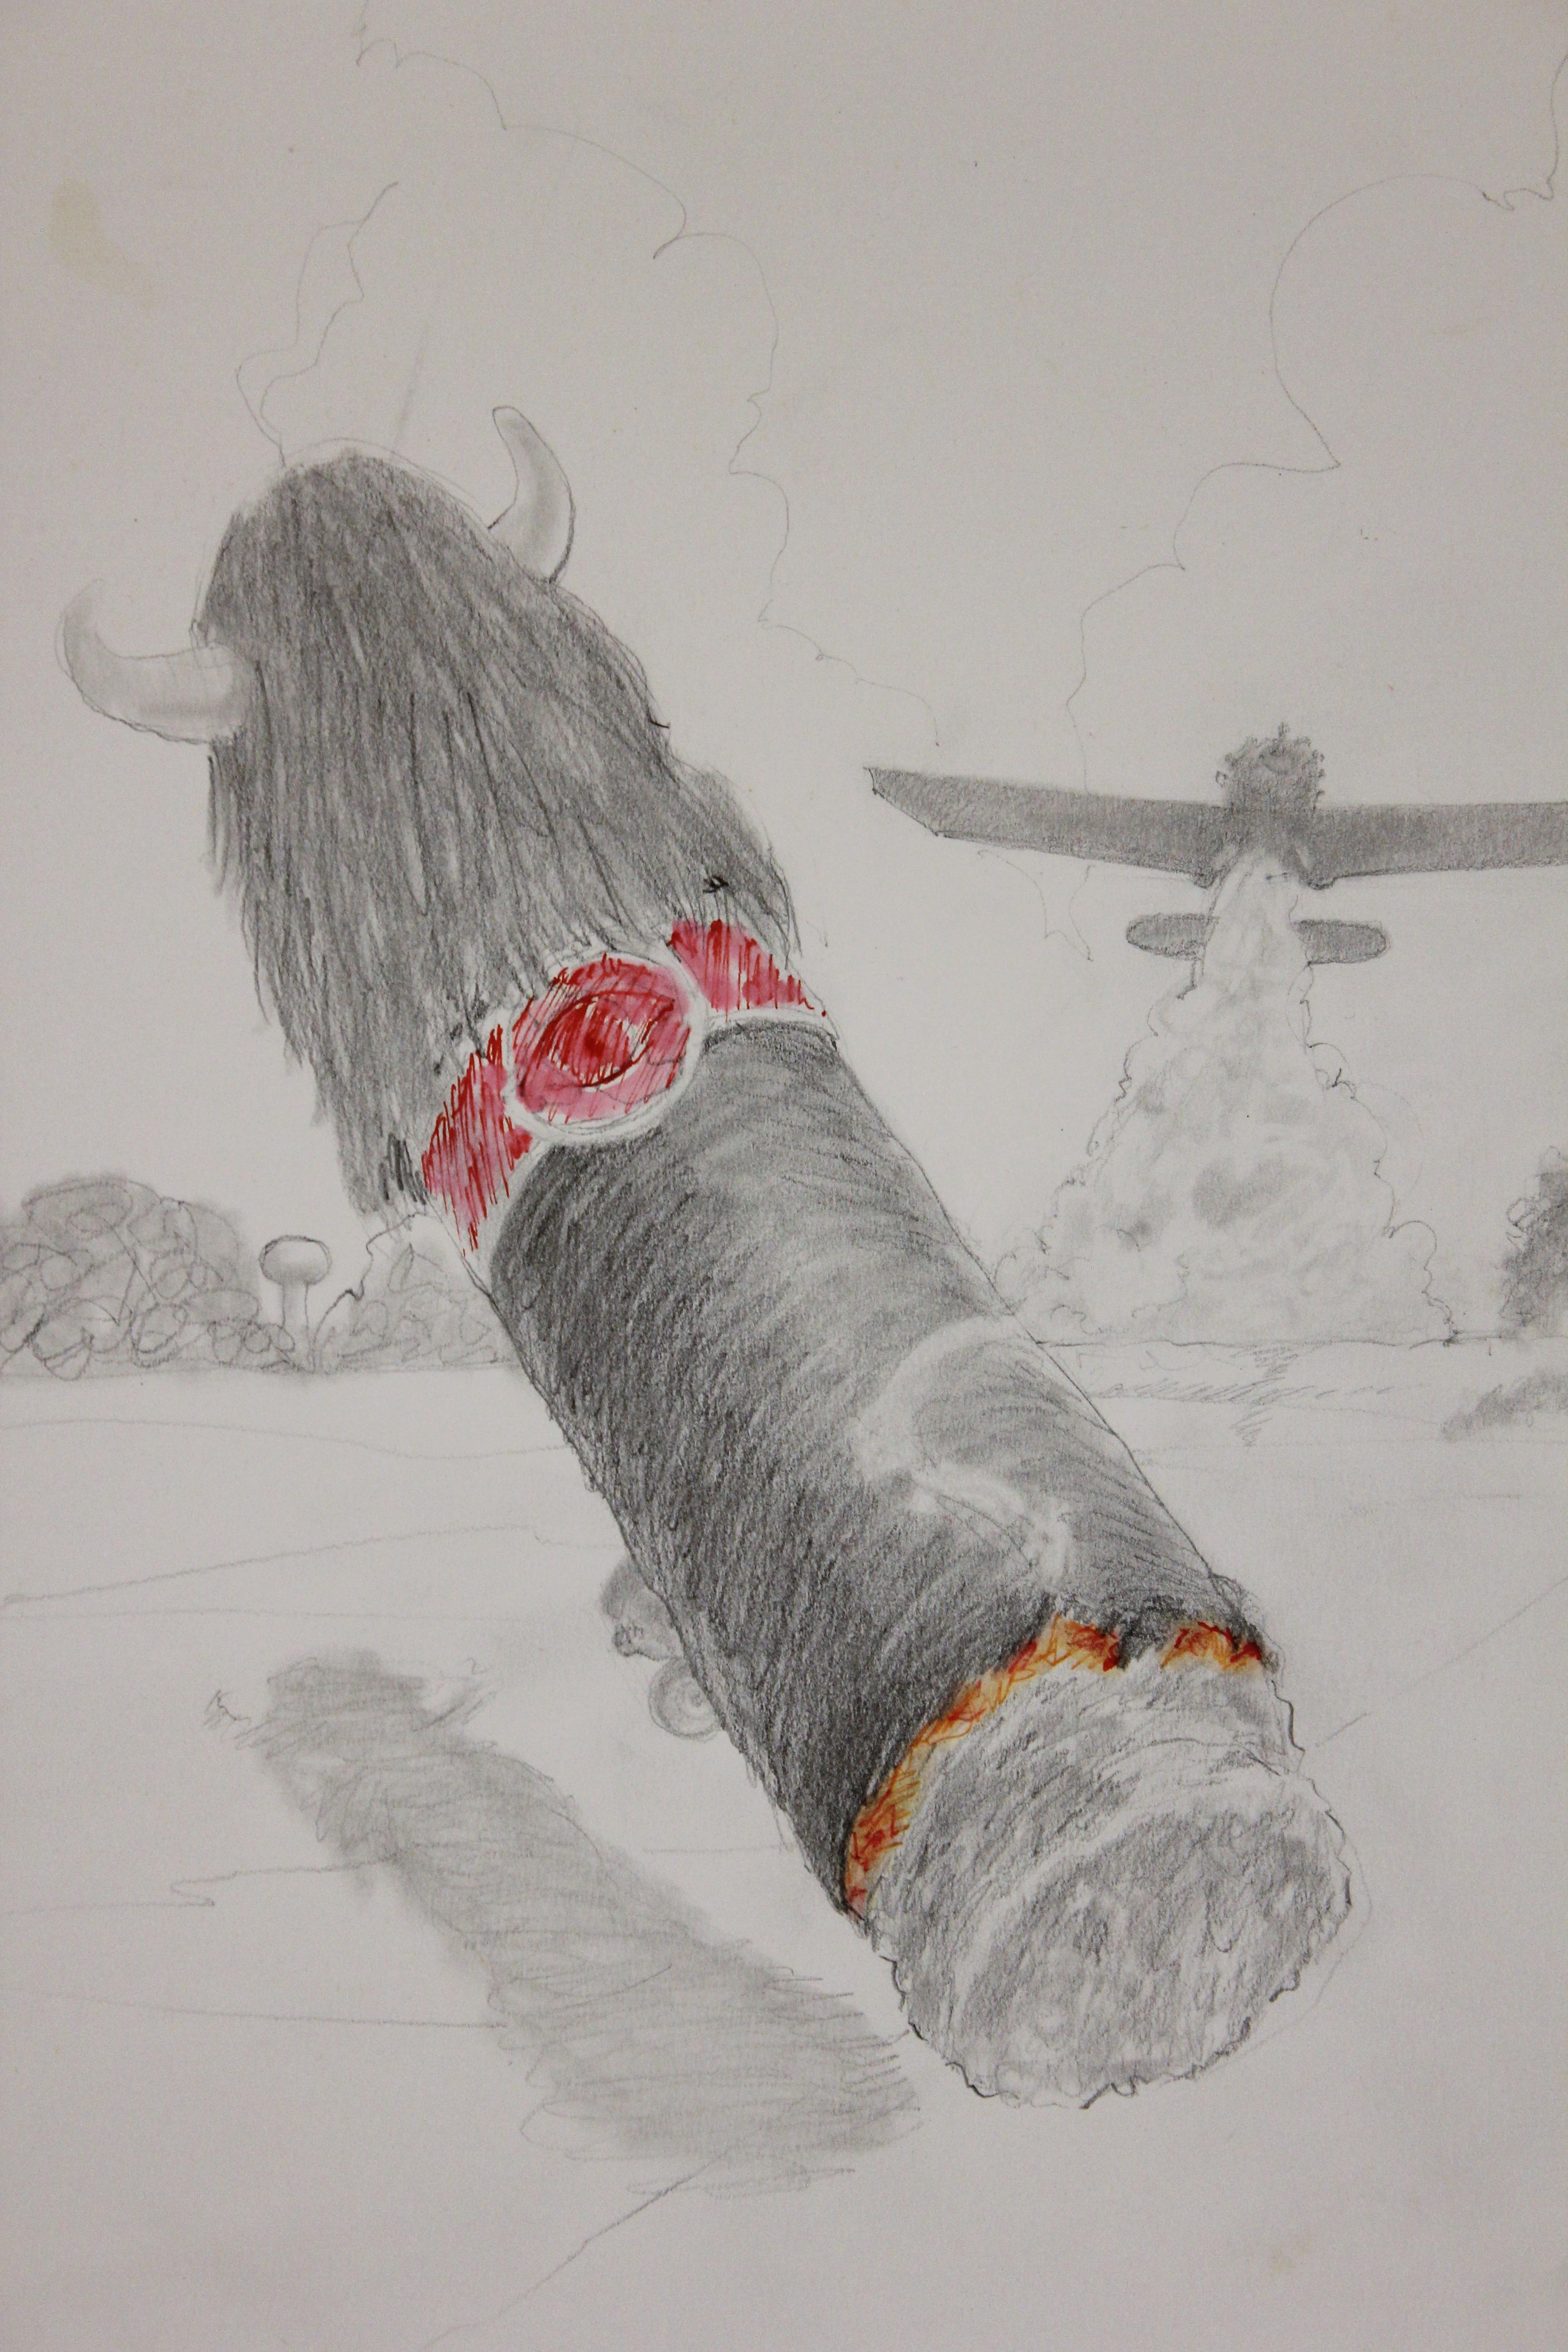 South, Texas Landschaft Surrealistische Zeichnung einer Zigarre und eines Kruges Staubtuchs – Art von Jack Boynton